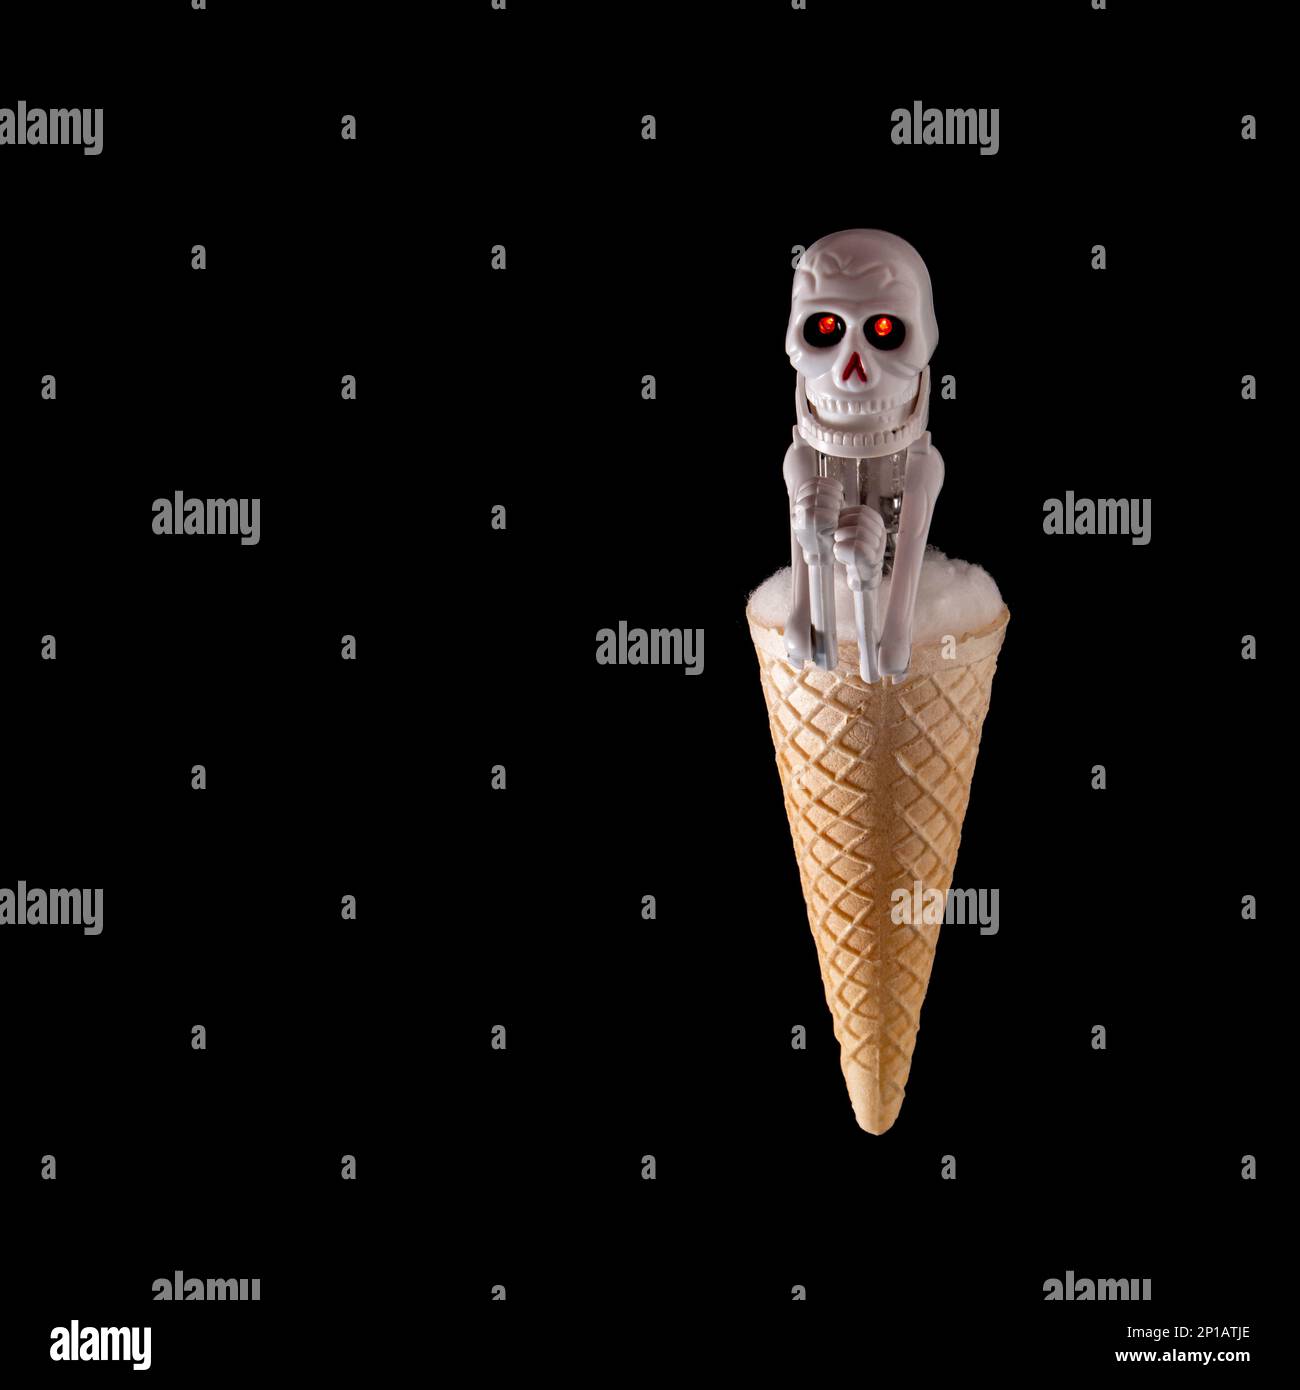 Immagine di un cono gelato sormontato da una figura scheletrica su sfondo nero Foto Stock